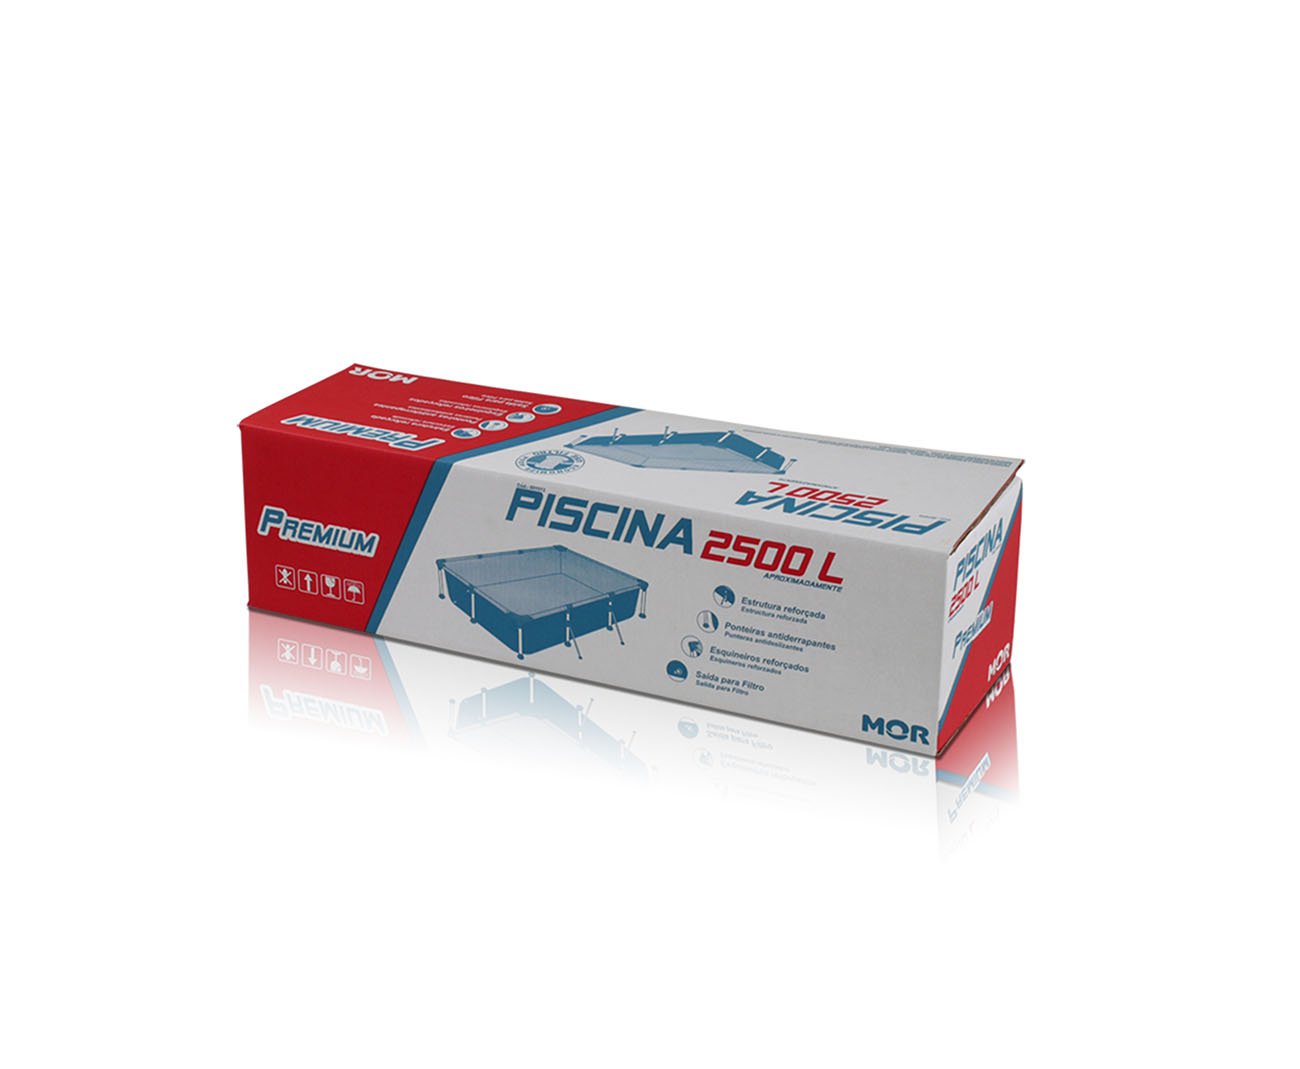 Piscina Premium Retangular 2500 Litros - Mor